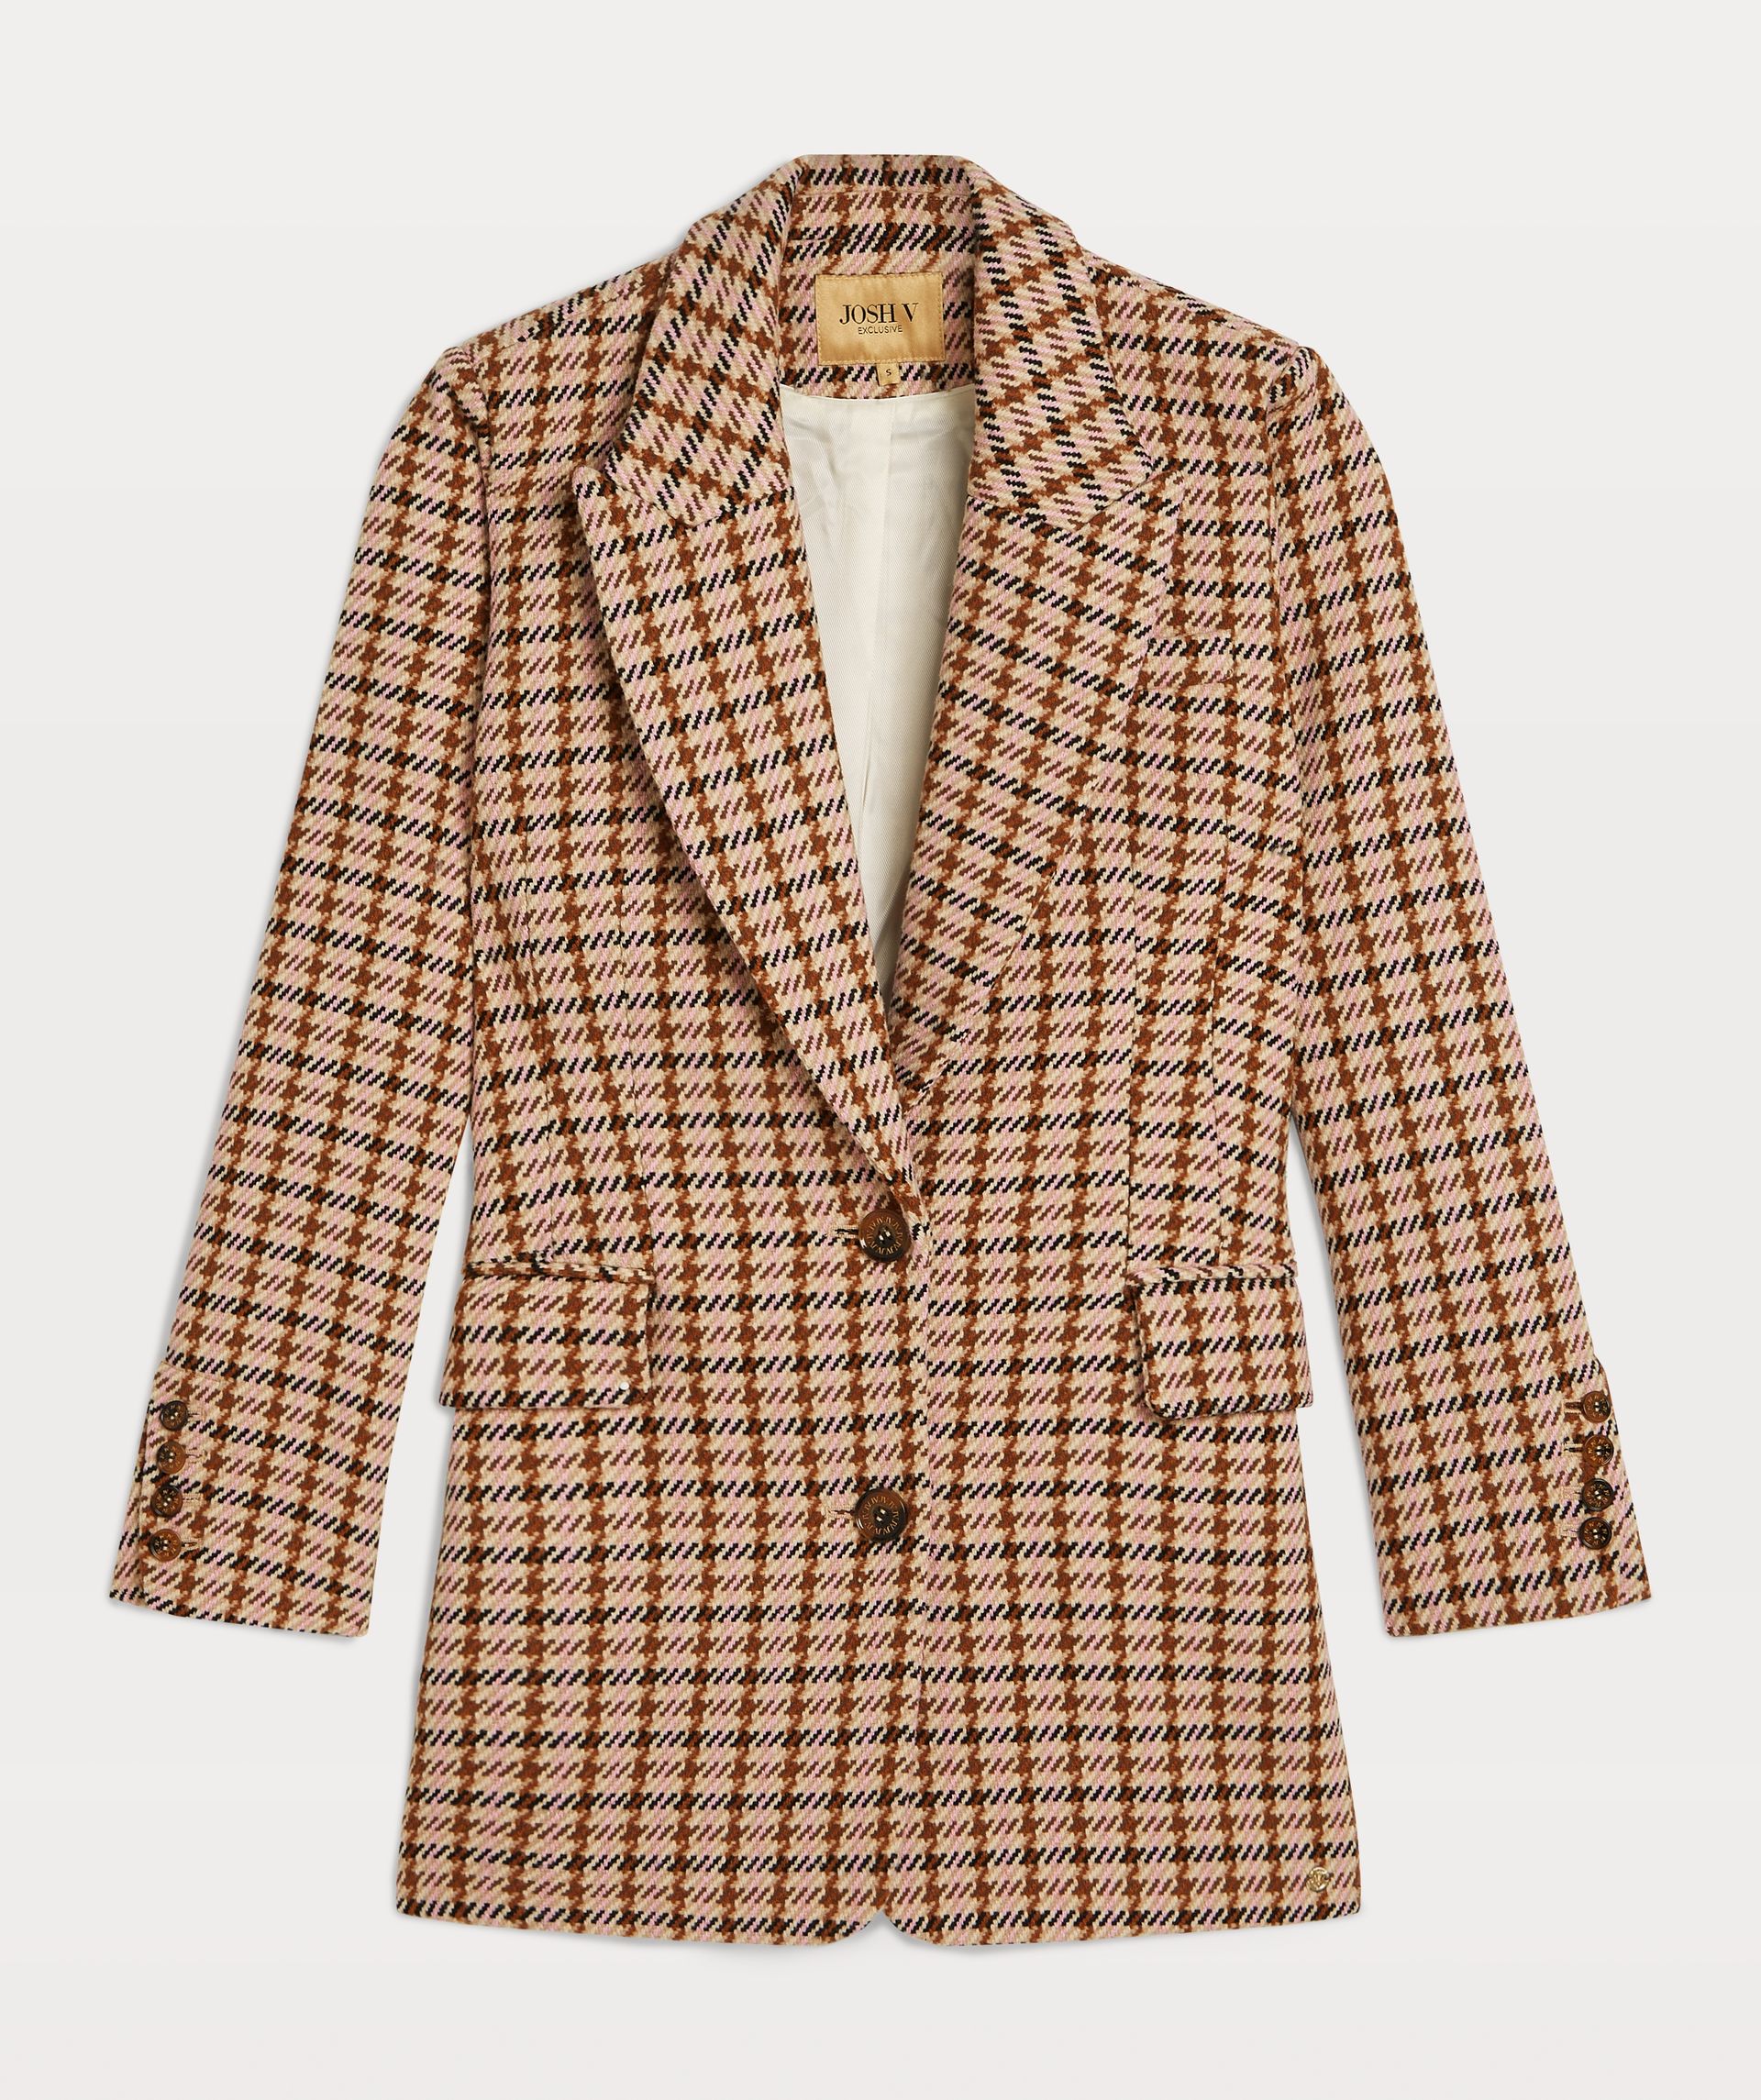 MARLOT oversized blazer with pied-de-poule design